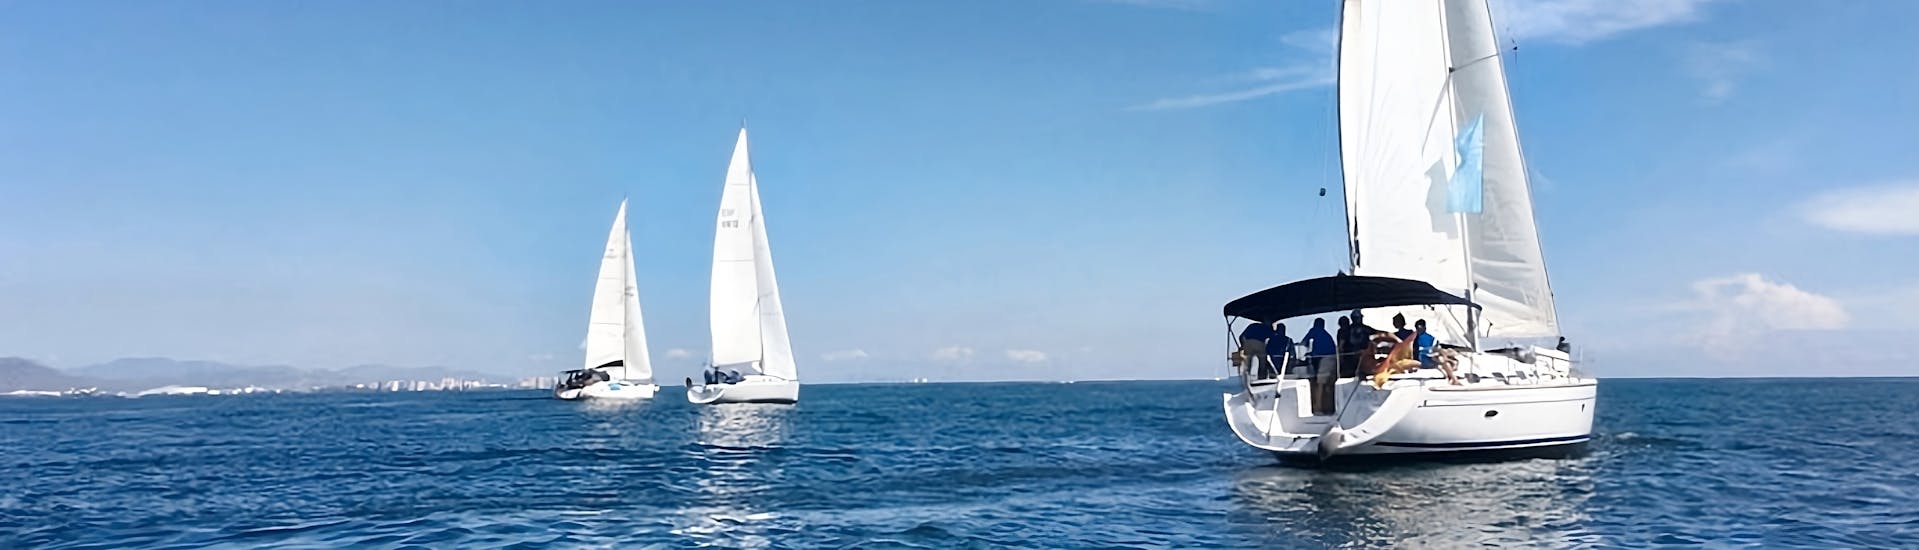 Imagen de algunos de los veleros de Alfa Nautica Valencia durante un paseo en barco velero por la costa de Valencia.